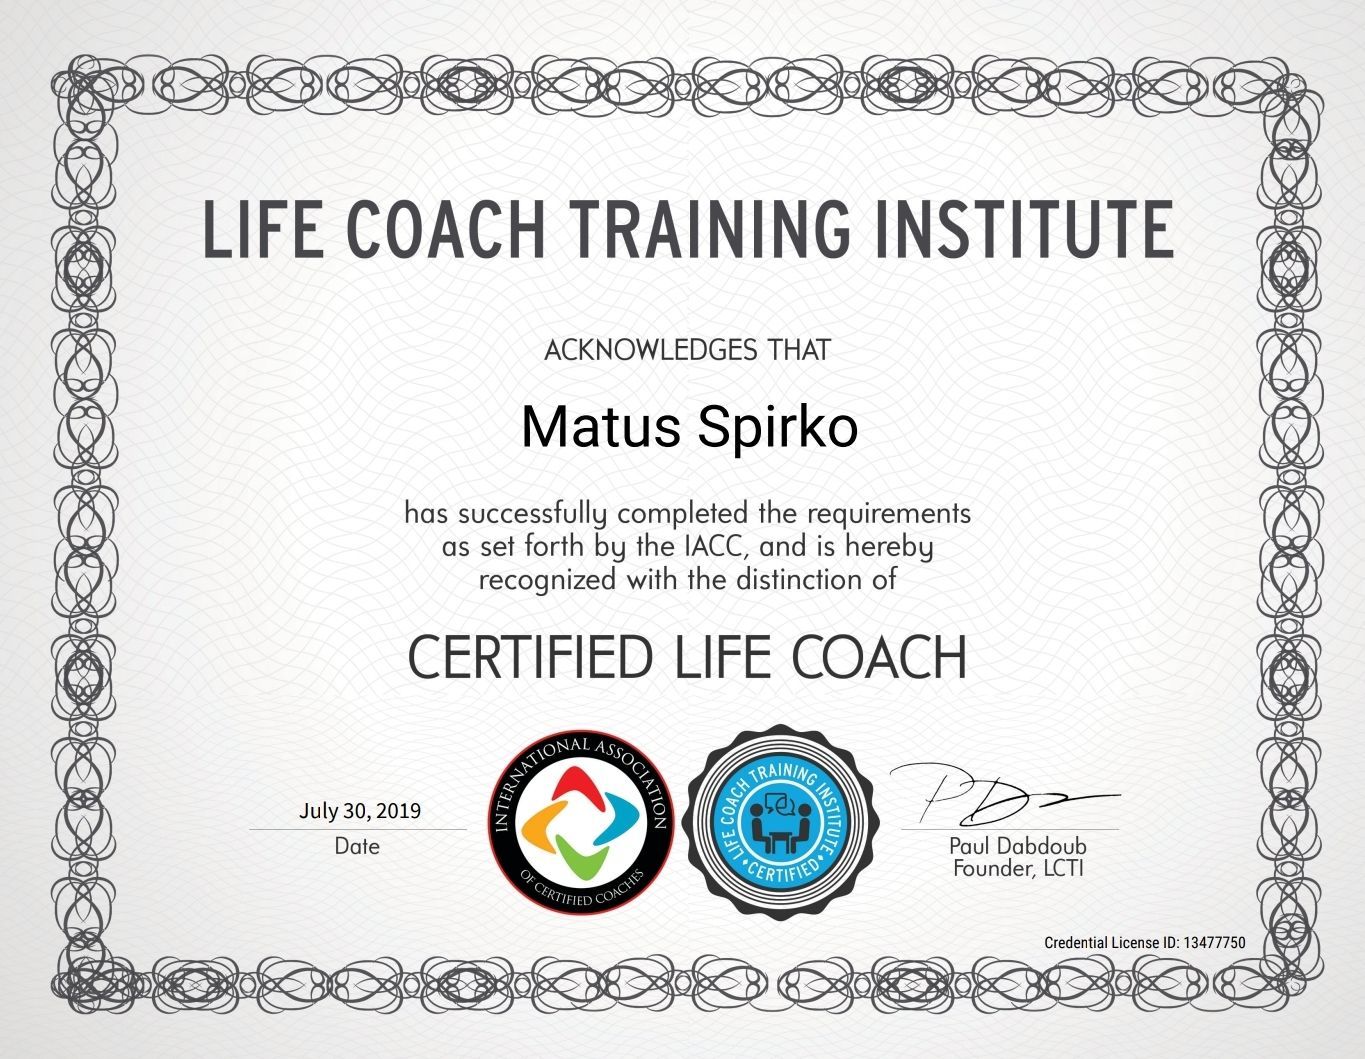 Life Coach Training Institute